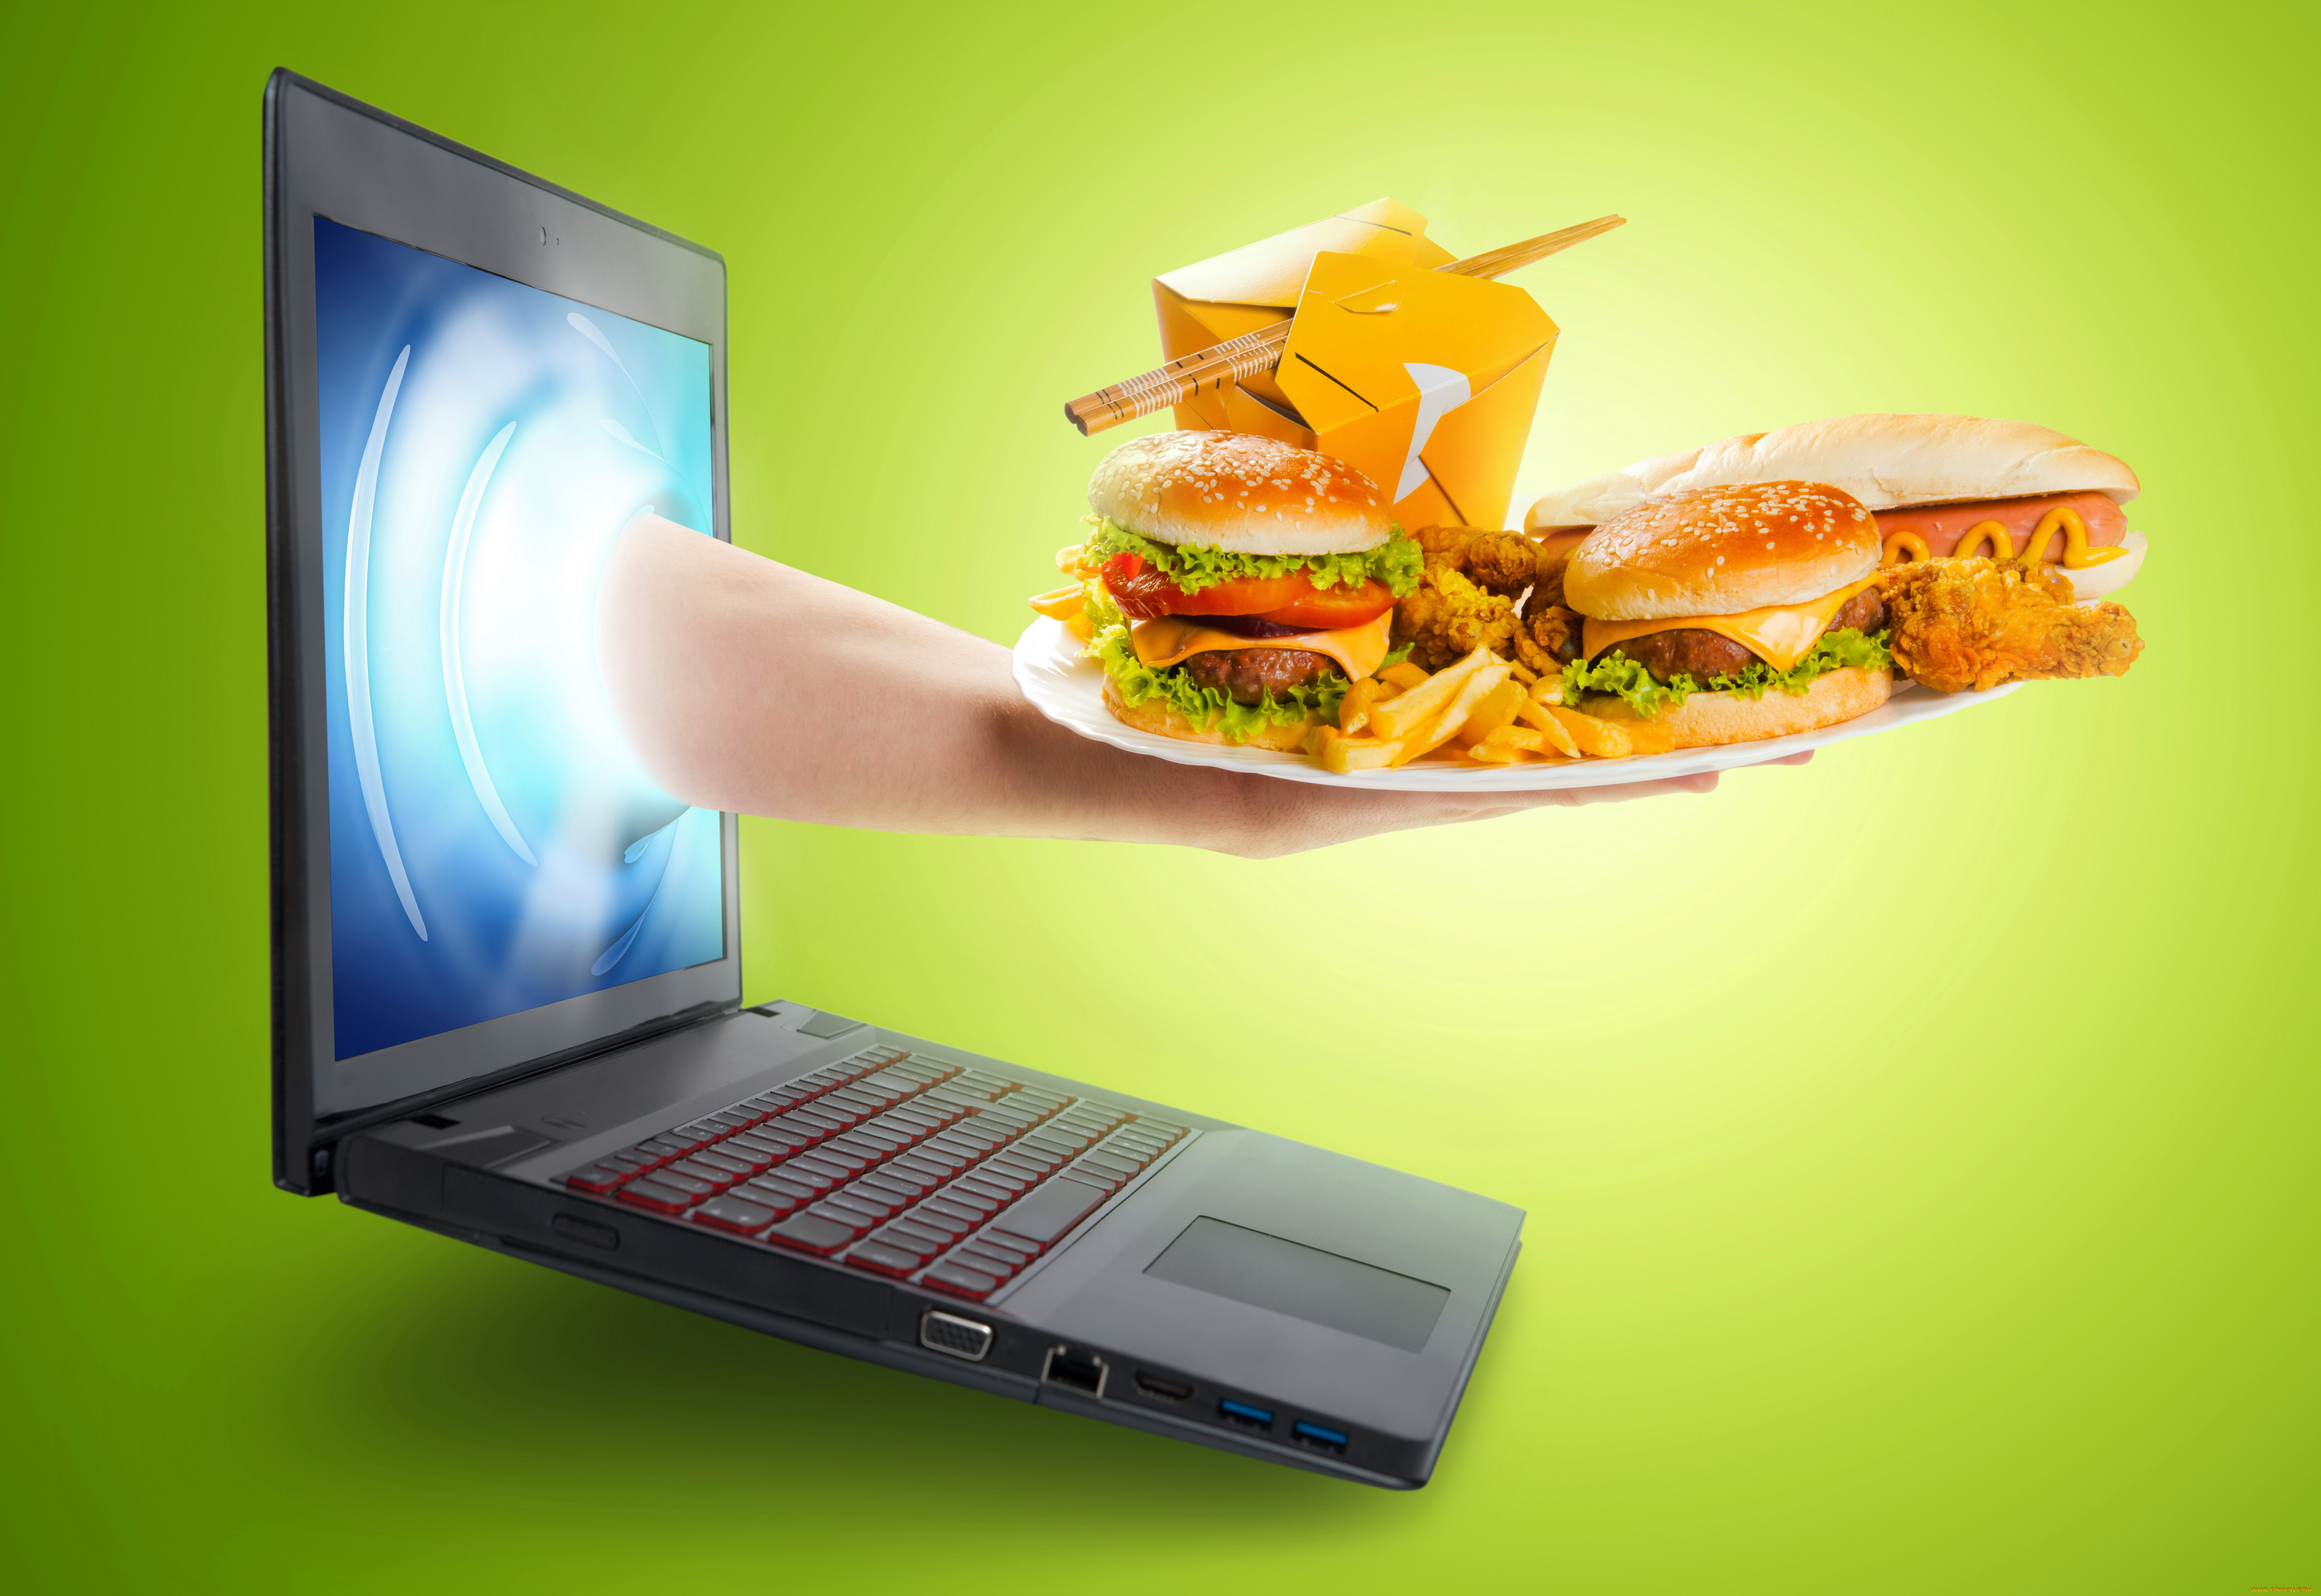 Включи питание ноутбук. Креативная реклама продуктов питания. Компьютер и еда. Креативная реклама фаст фуда. Баннер еда.